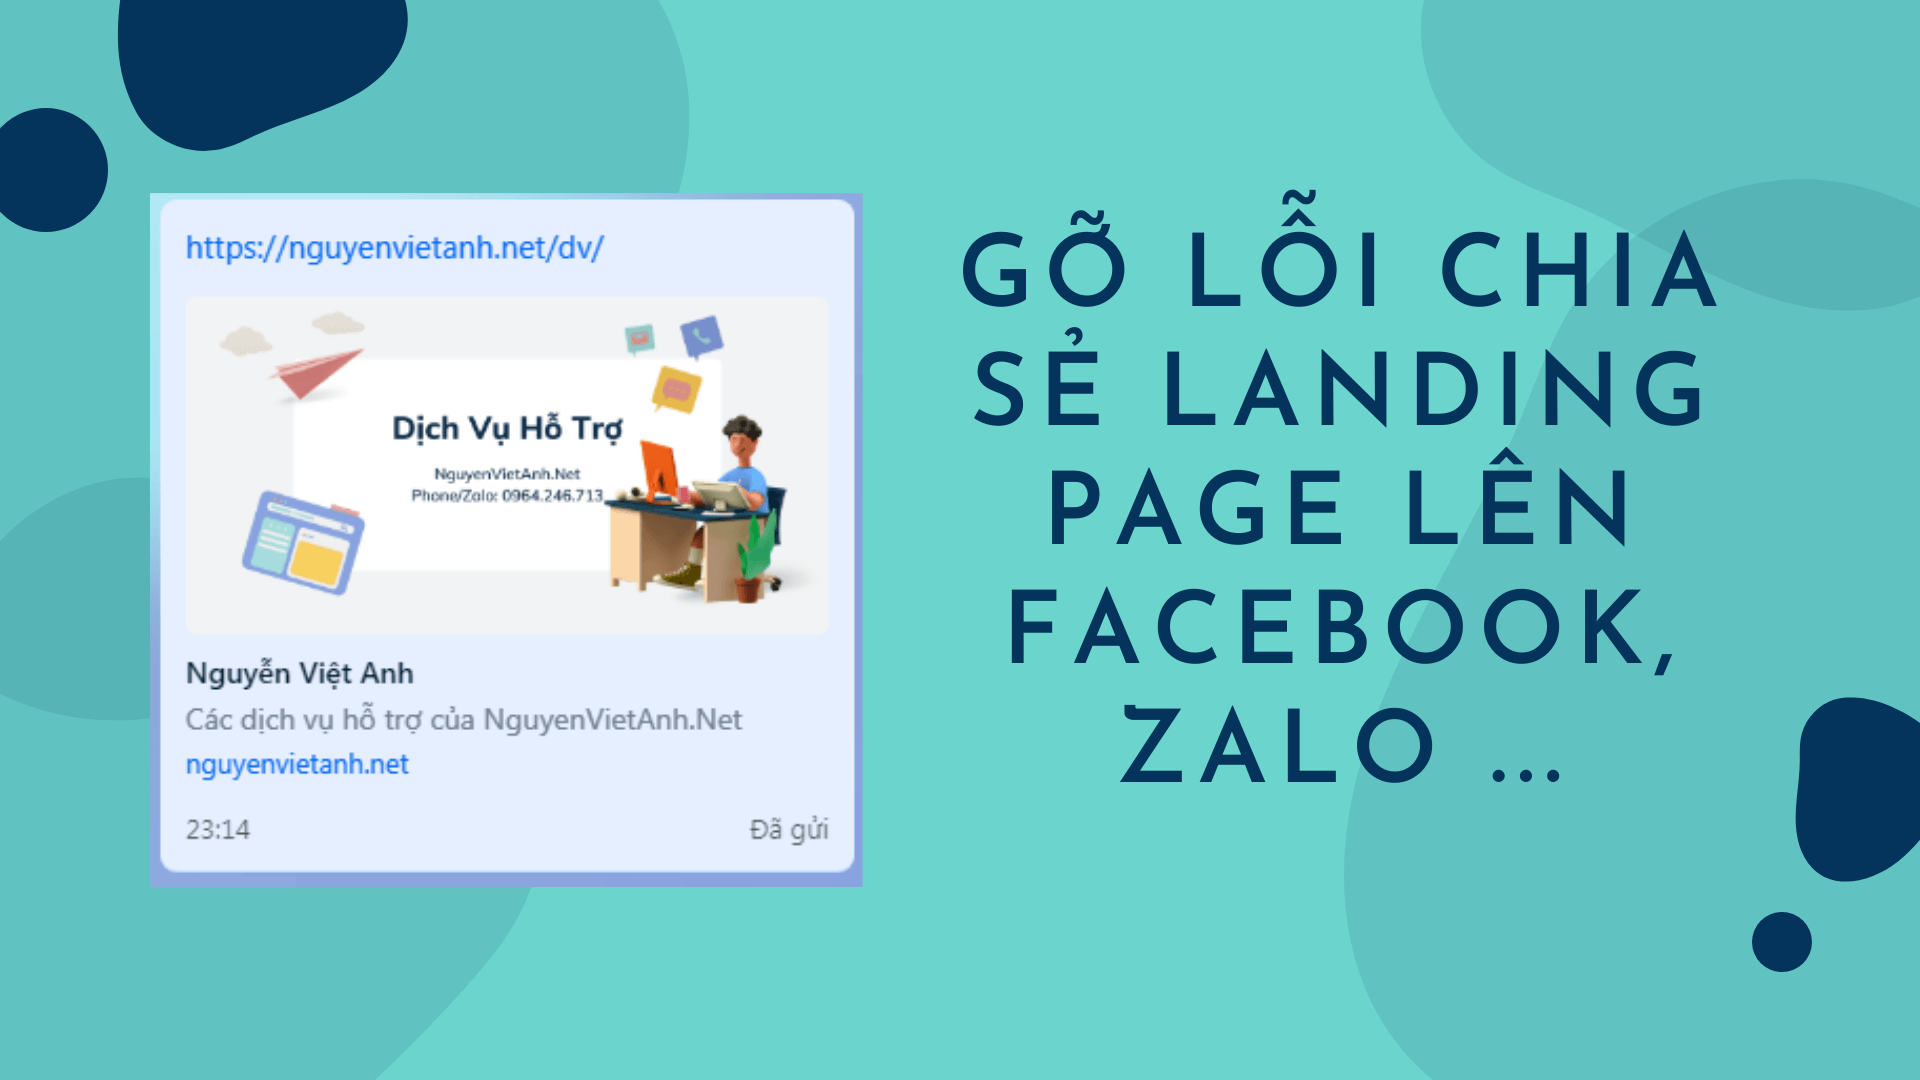 Gỡ lỗi chia sẻ Landing Page lên Facebook, Zalo ...